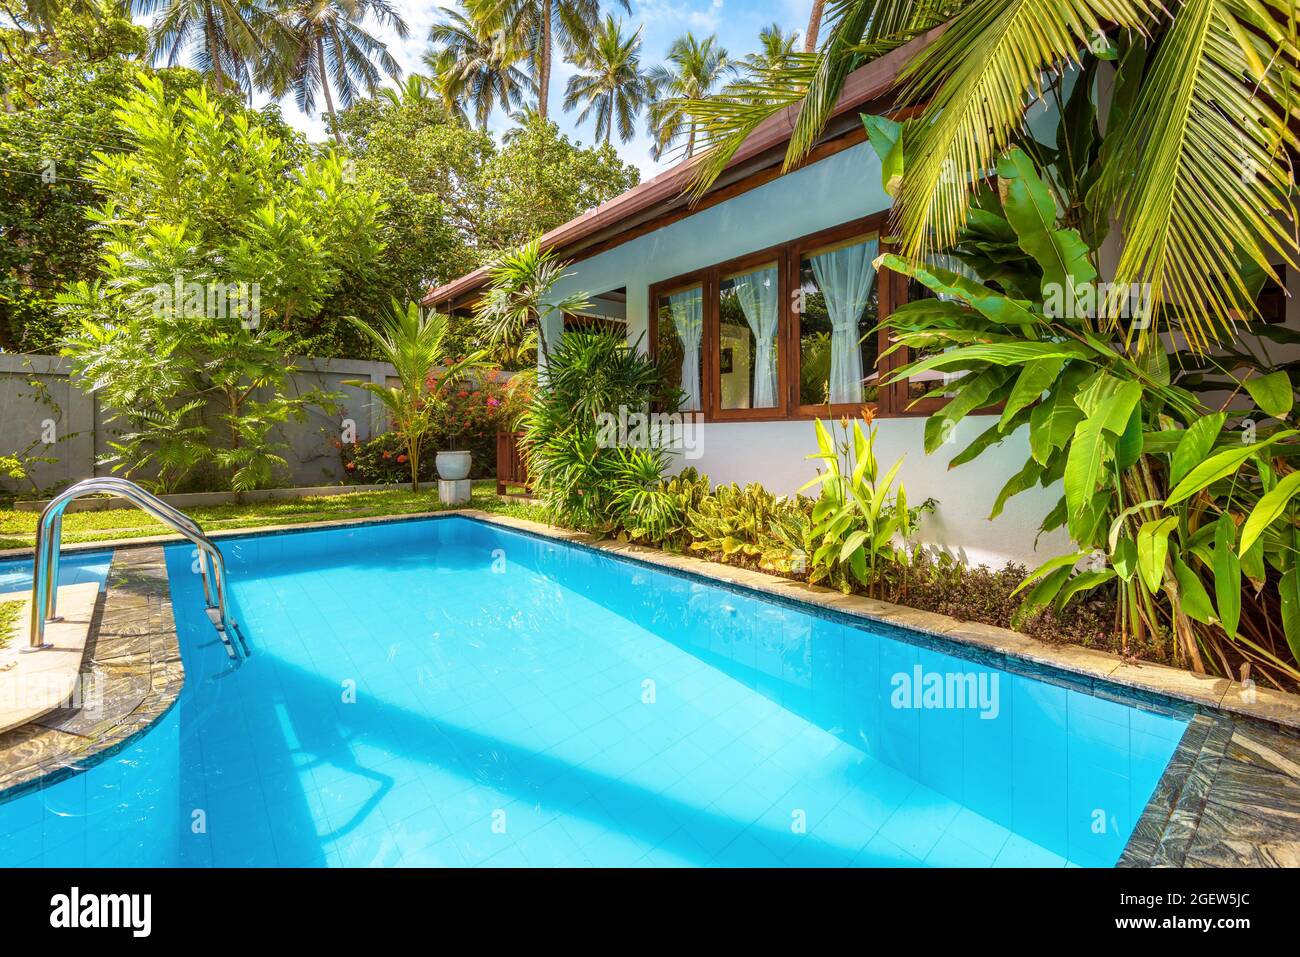 Sri Lanka - Nov 2, 2017: Schöner Pool im Hinterhof eines luxuriösen tropischen Hotels oder Wohnhauses. Schöner Pool mit blauem sauberem Wasser in der Villa c Stockfoto